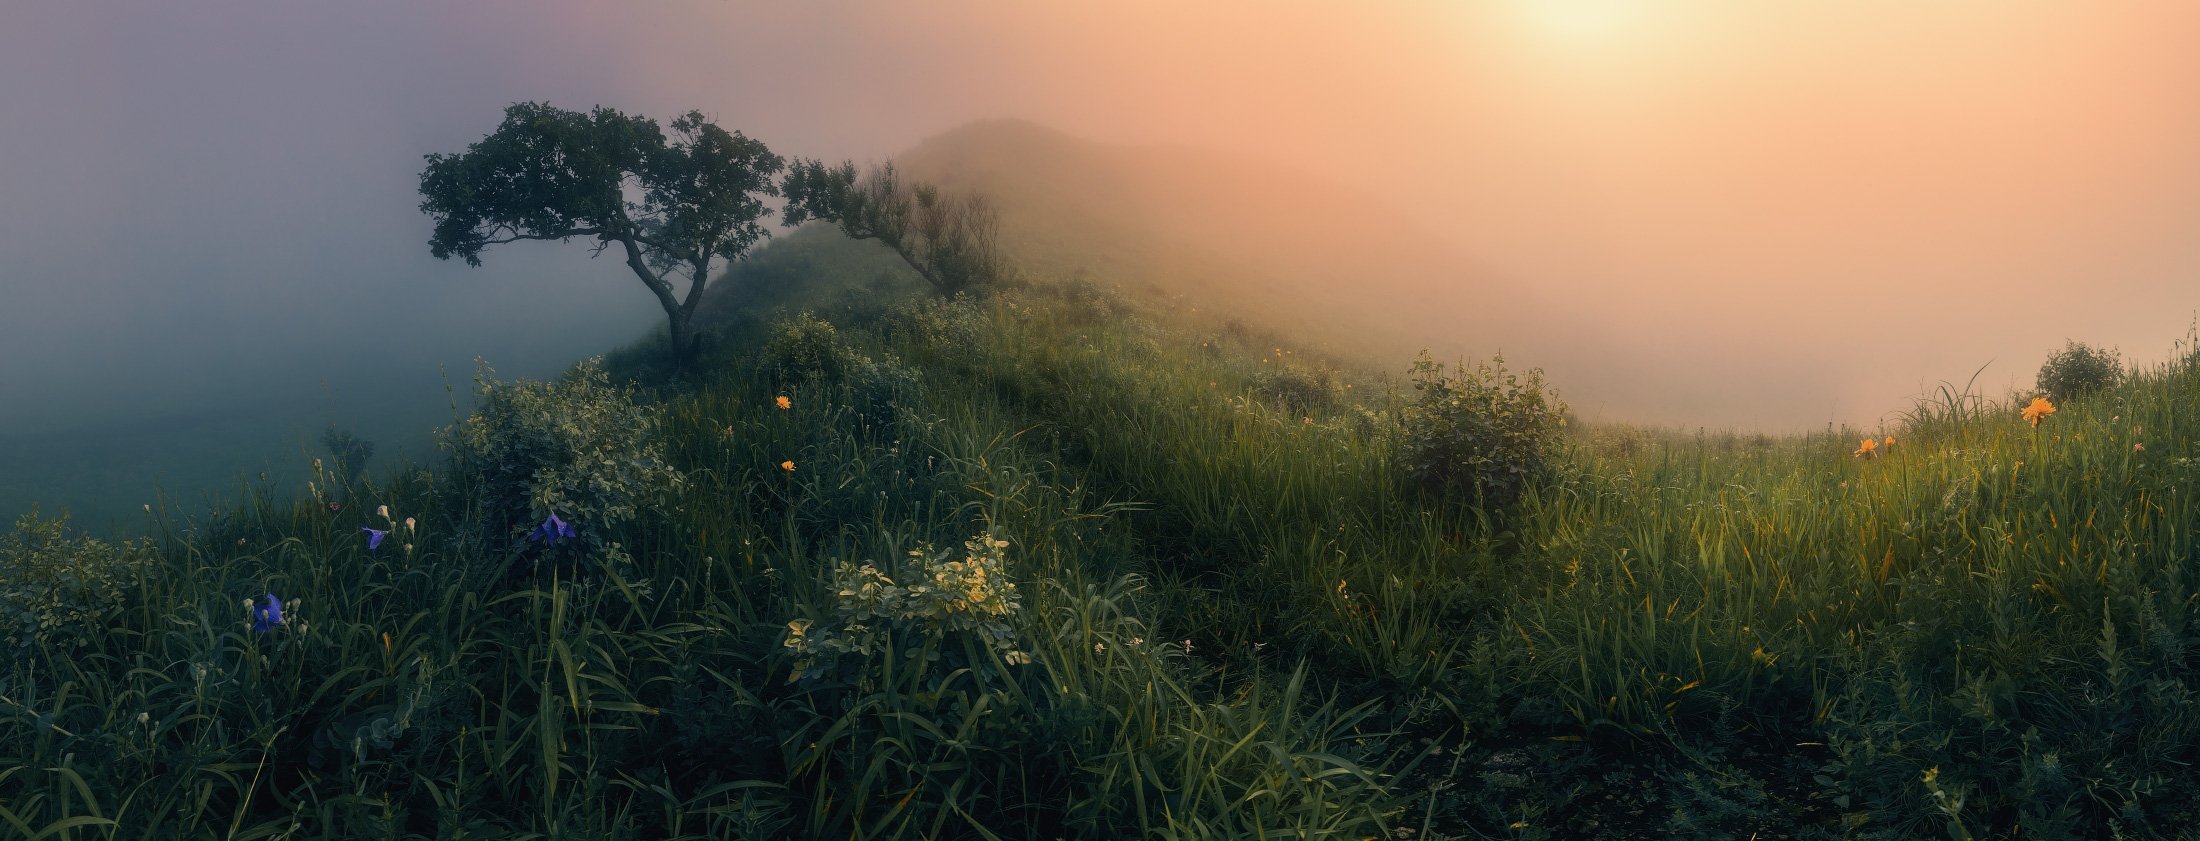 панорама, утро, туман, лето,, Андрей Кровлин